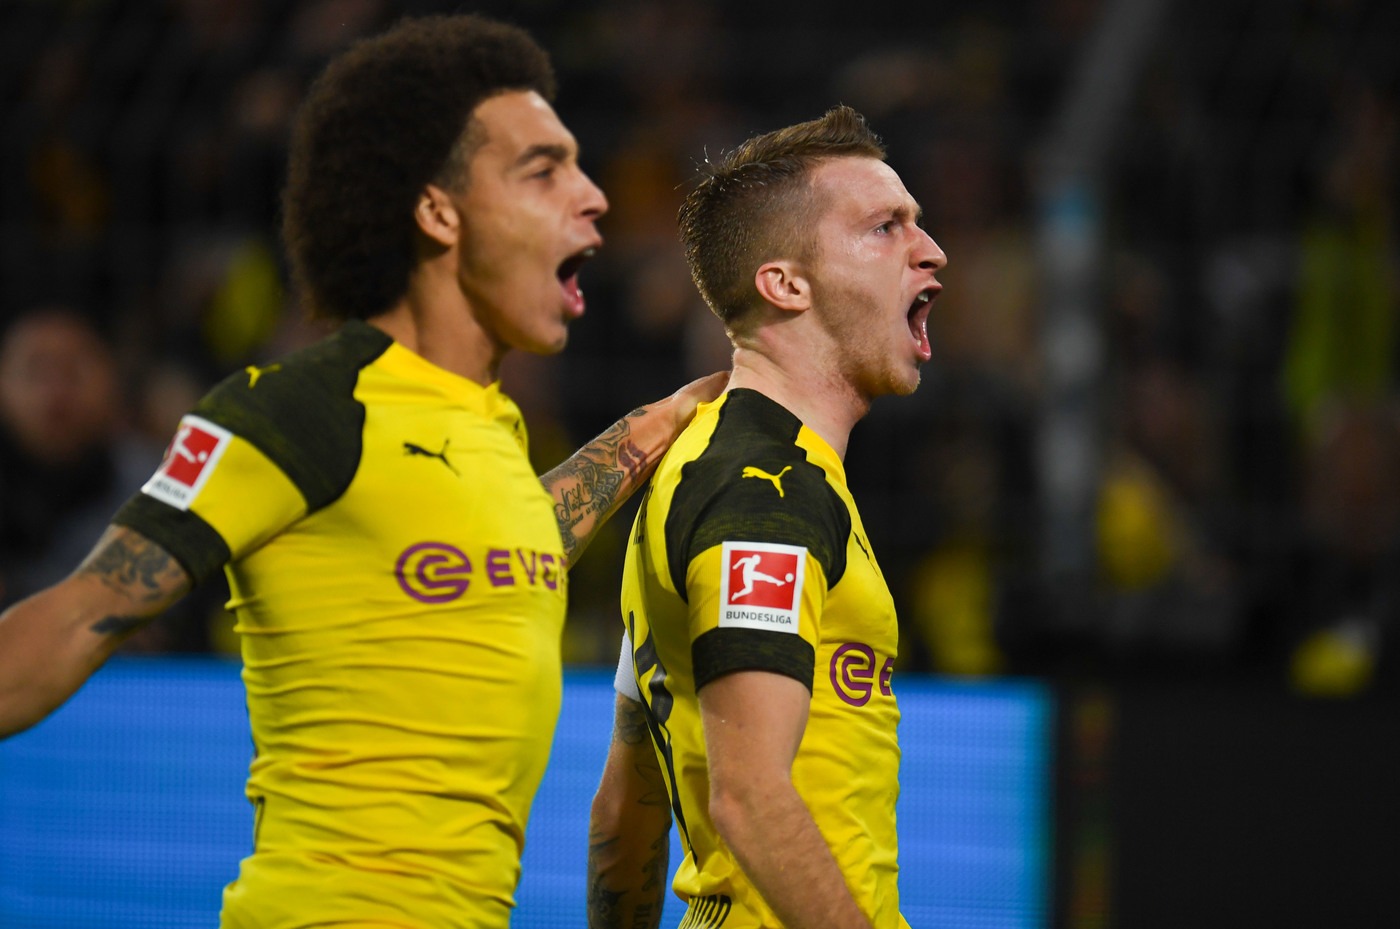 Bundesliga, Francoforte-Borussia Dortmund 2 febbraio: analisi e pronostico della giornata della massima divisione calcistica tedesca